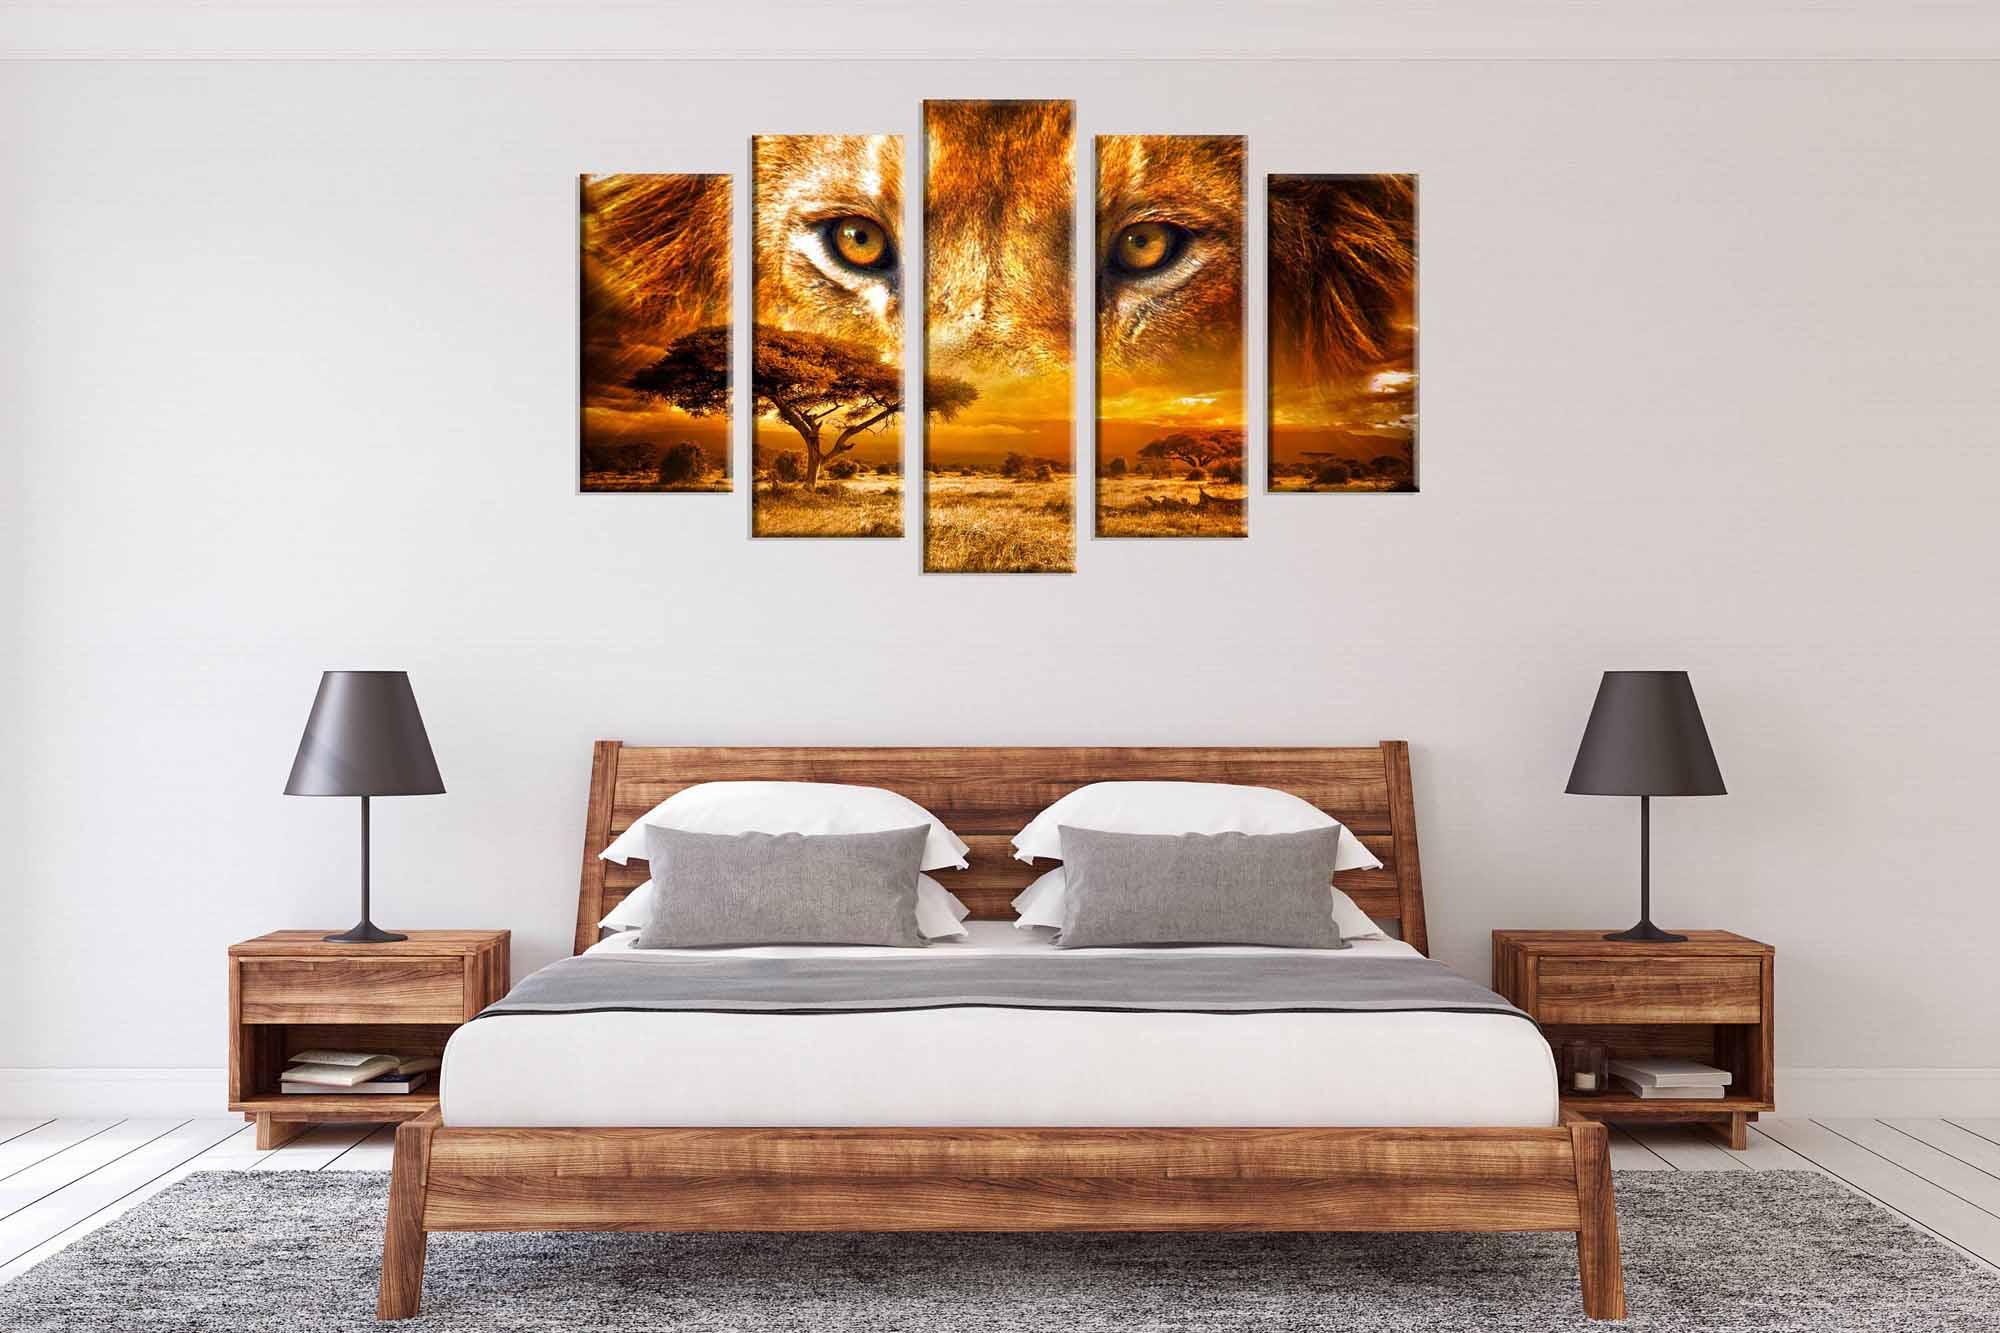 Modulinis paveikslas - liūto akys virš savanos